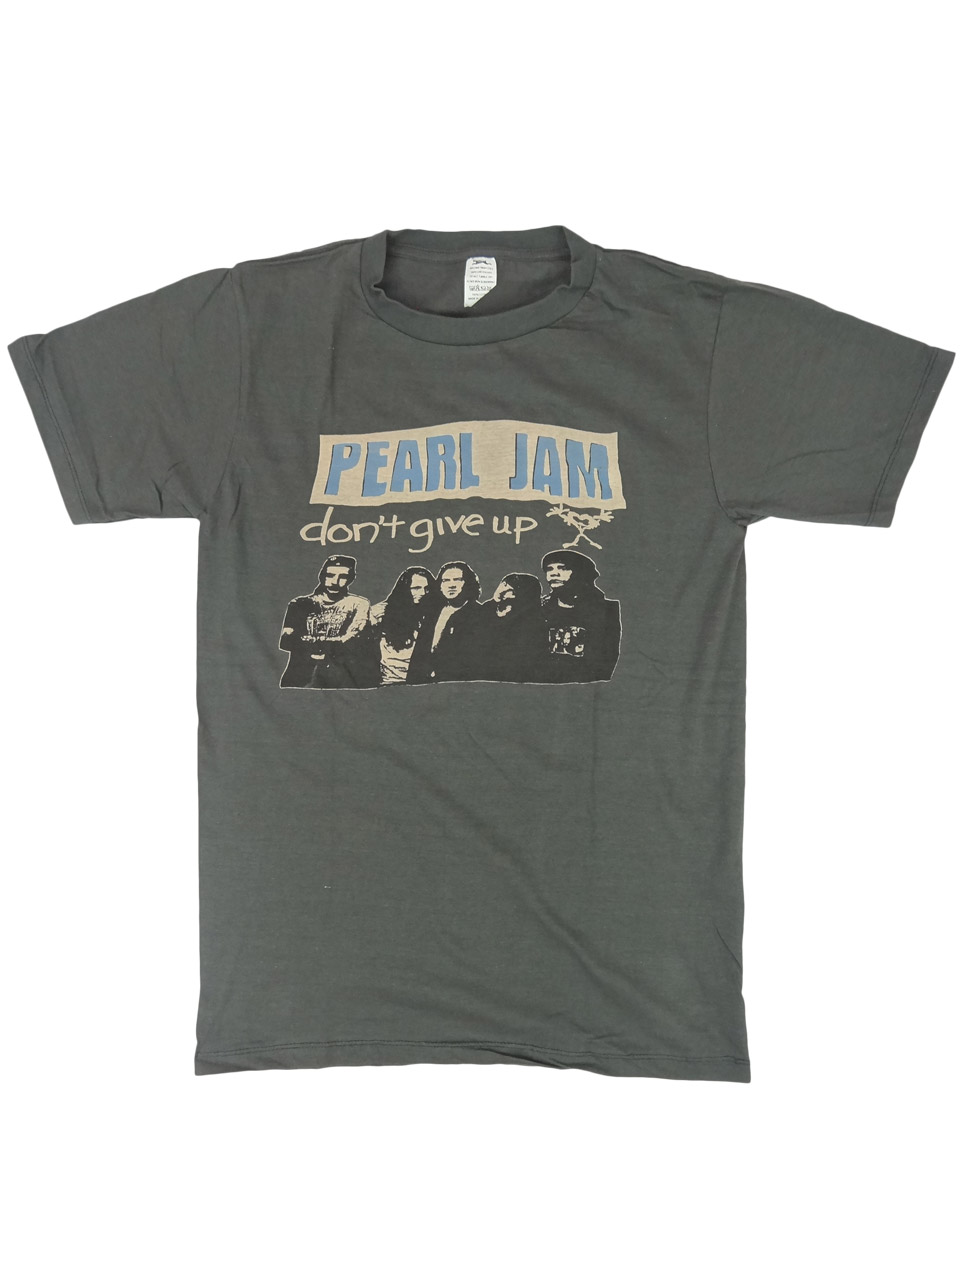 ヴィンテージ風 ロックTシャツ Pearl Jam パール ジャム don't give up brt-0216